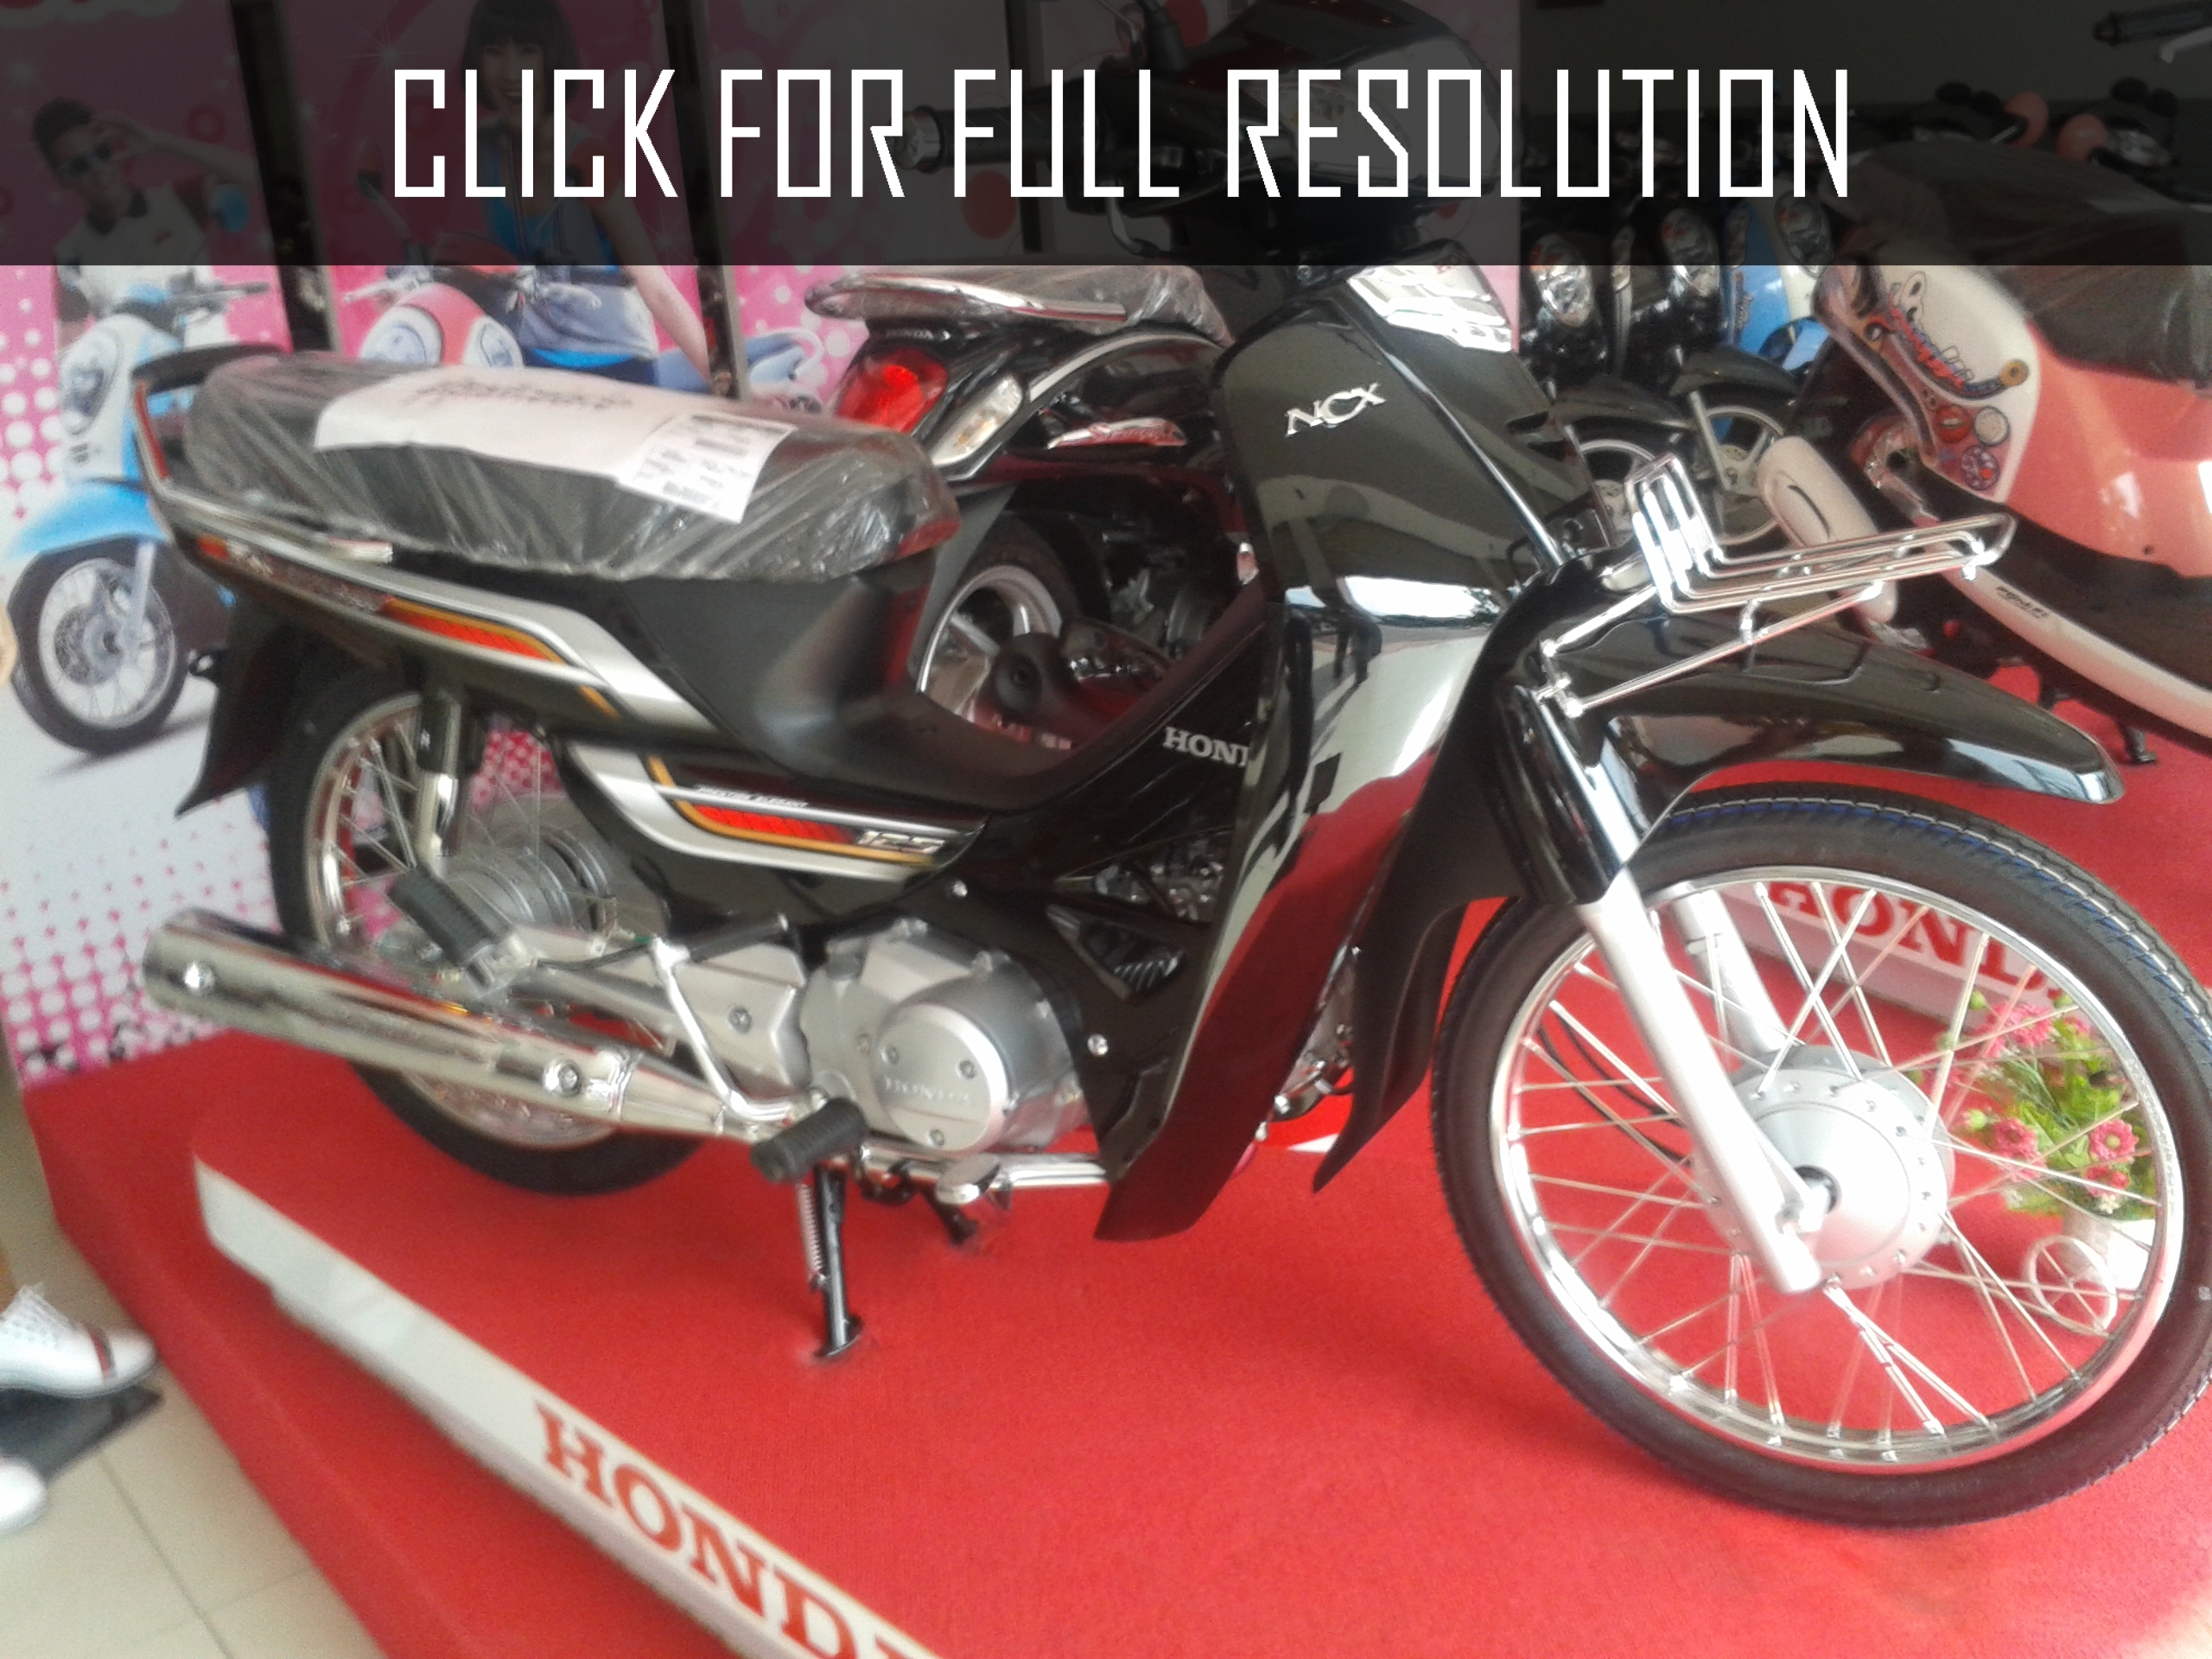 Honda Dream 125cc 2014